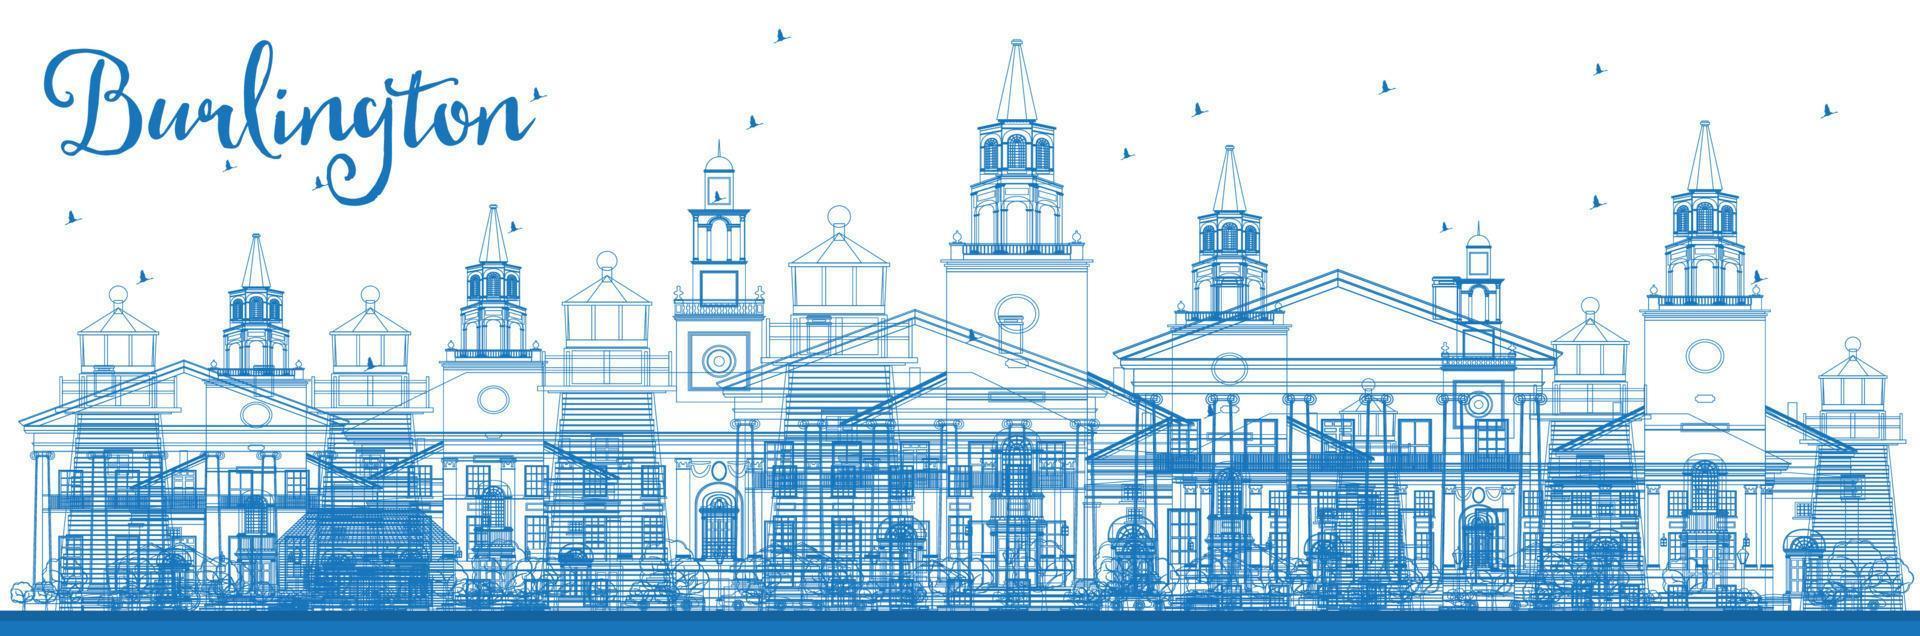 skissera burlington vermont stadssilhuett med blå byggnader. vektor